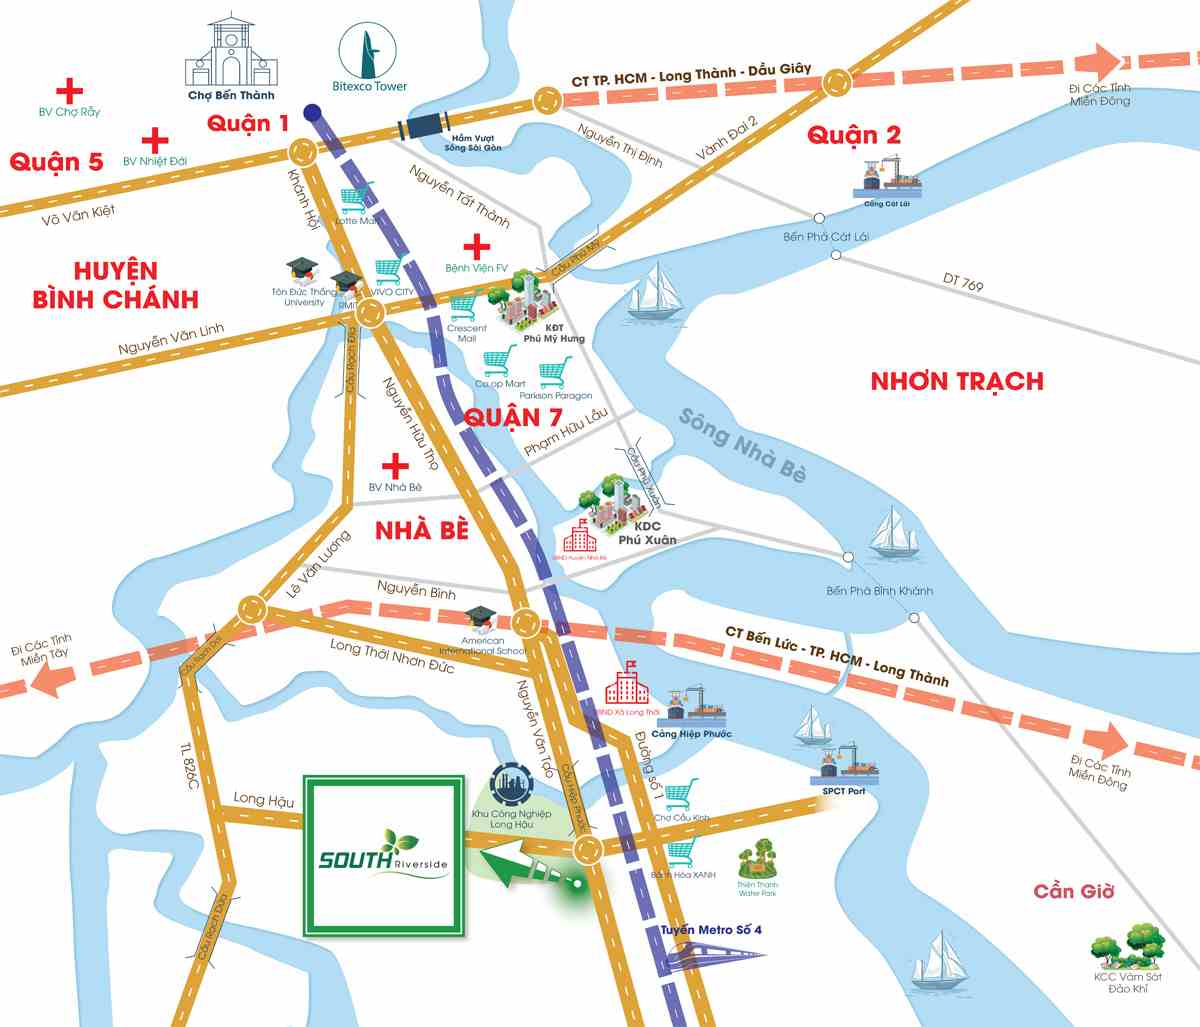 南河滨 Nha Be 住宅区项目的位置，第 7 区